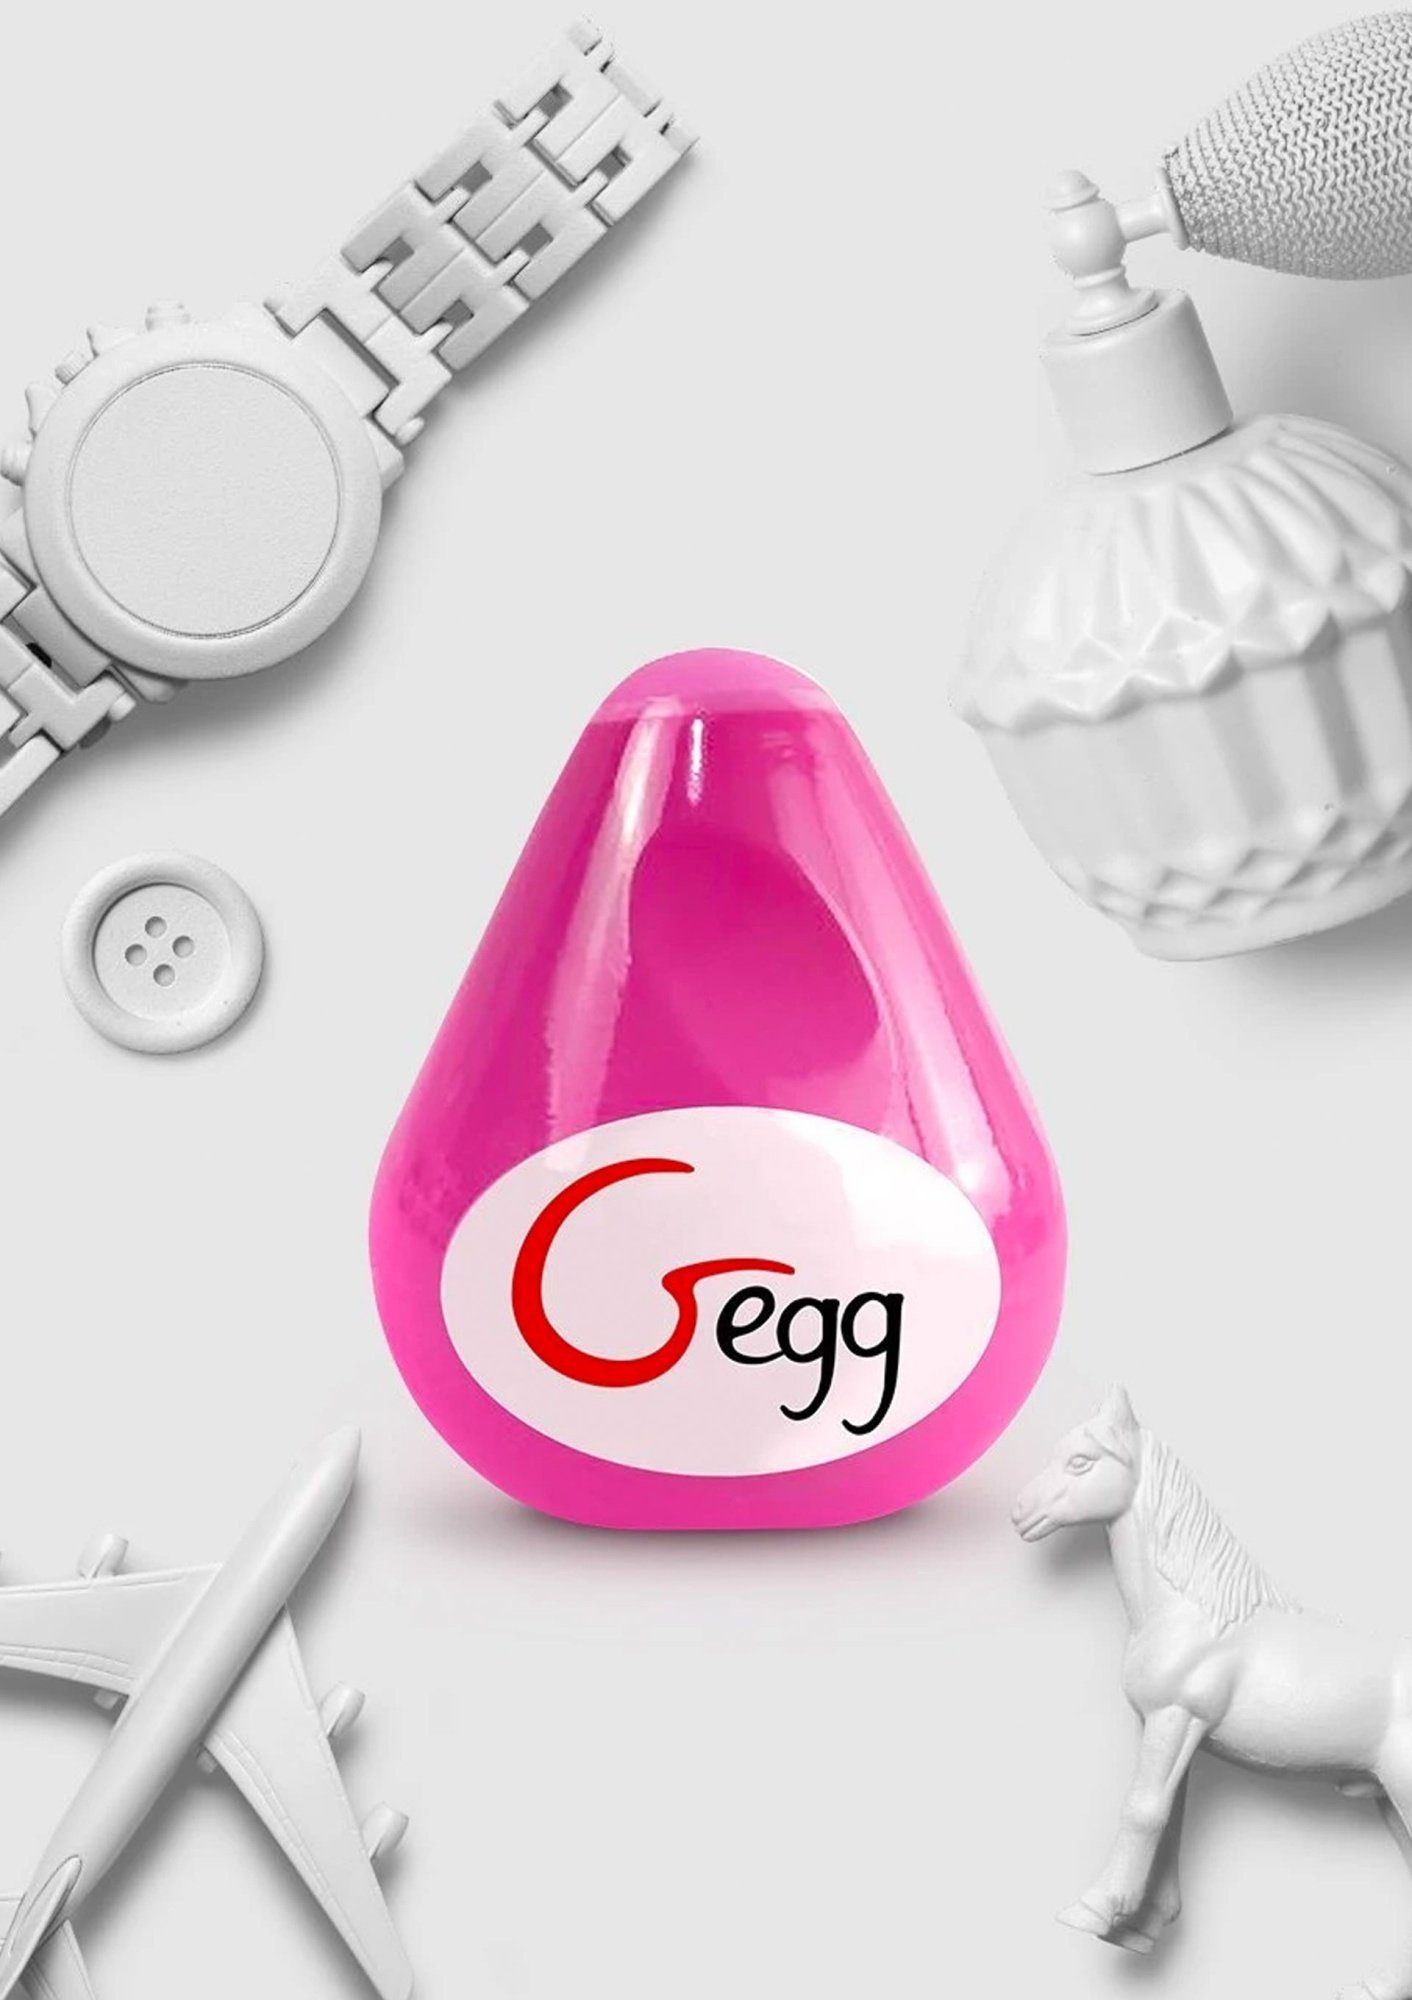 G-VIBE Ei Masturbator Masturbator pink - G-egg